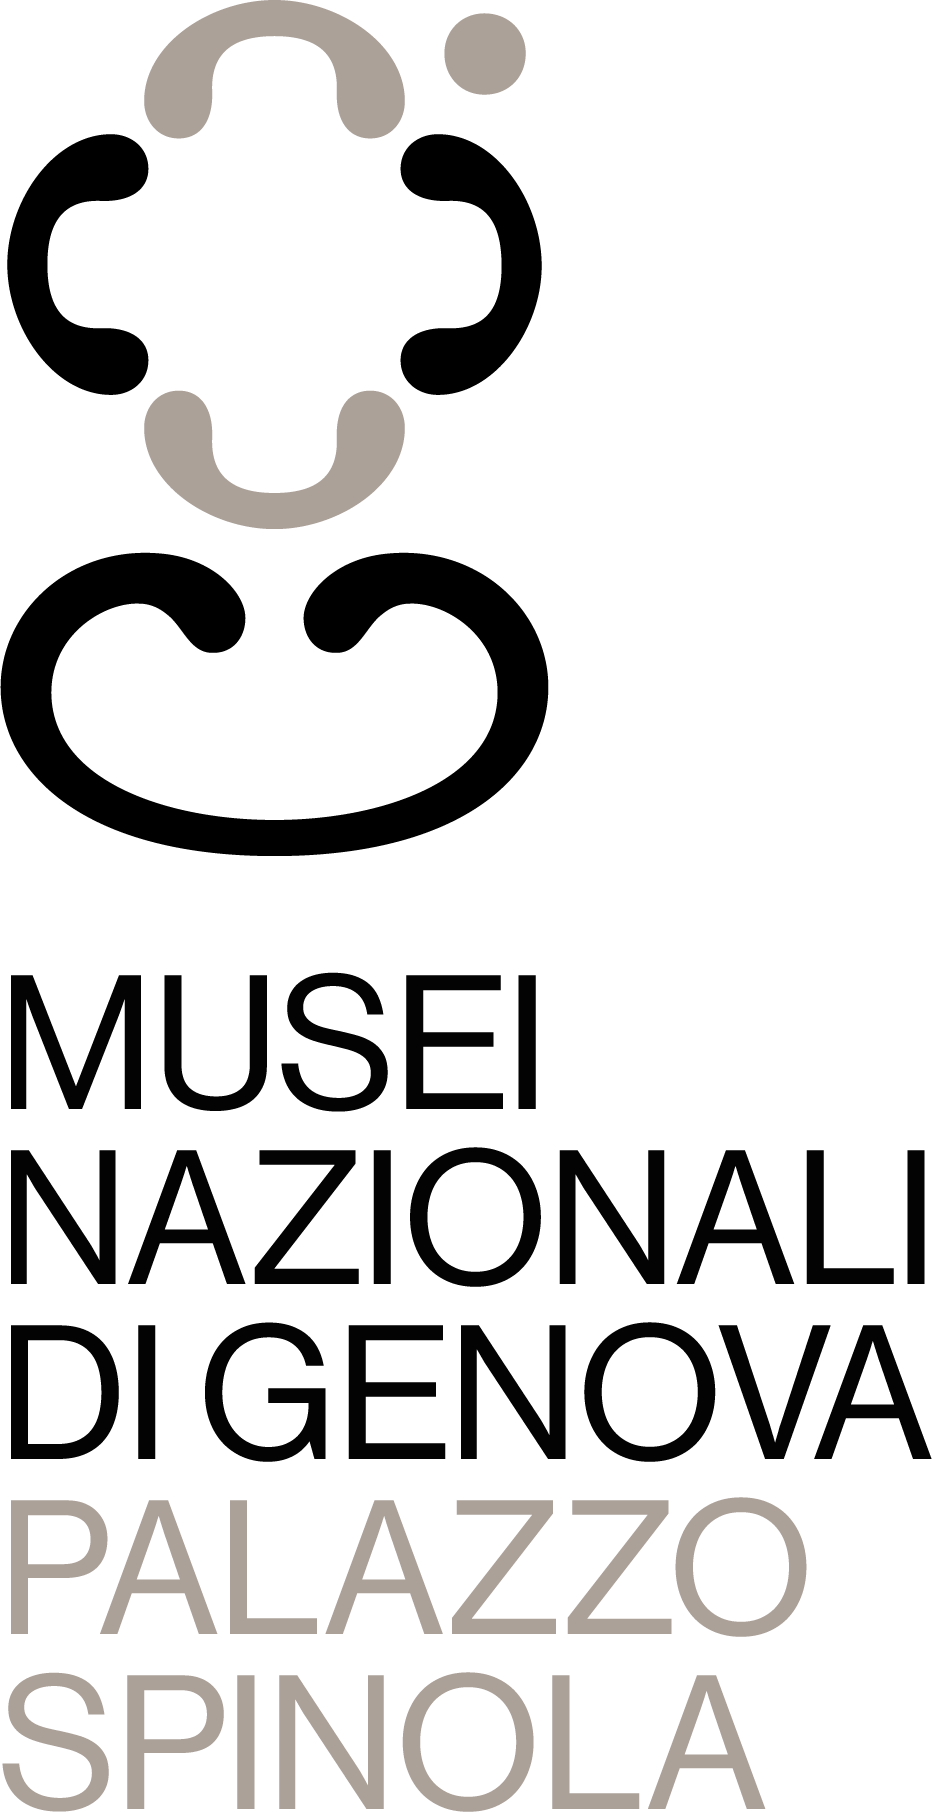 Gallerie Nazionali di Palazzo Spinola, Genova, galleria degli specchiPalazzo Spinola